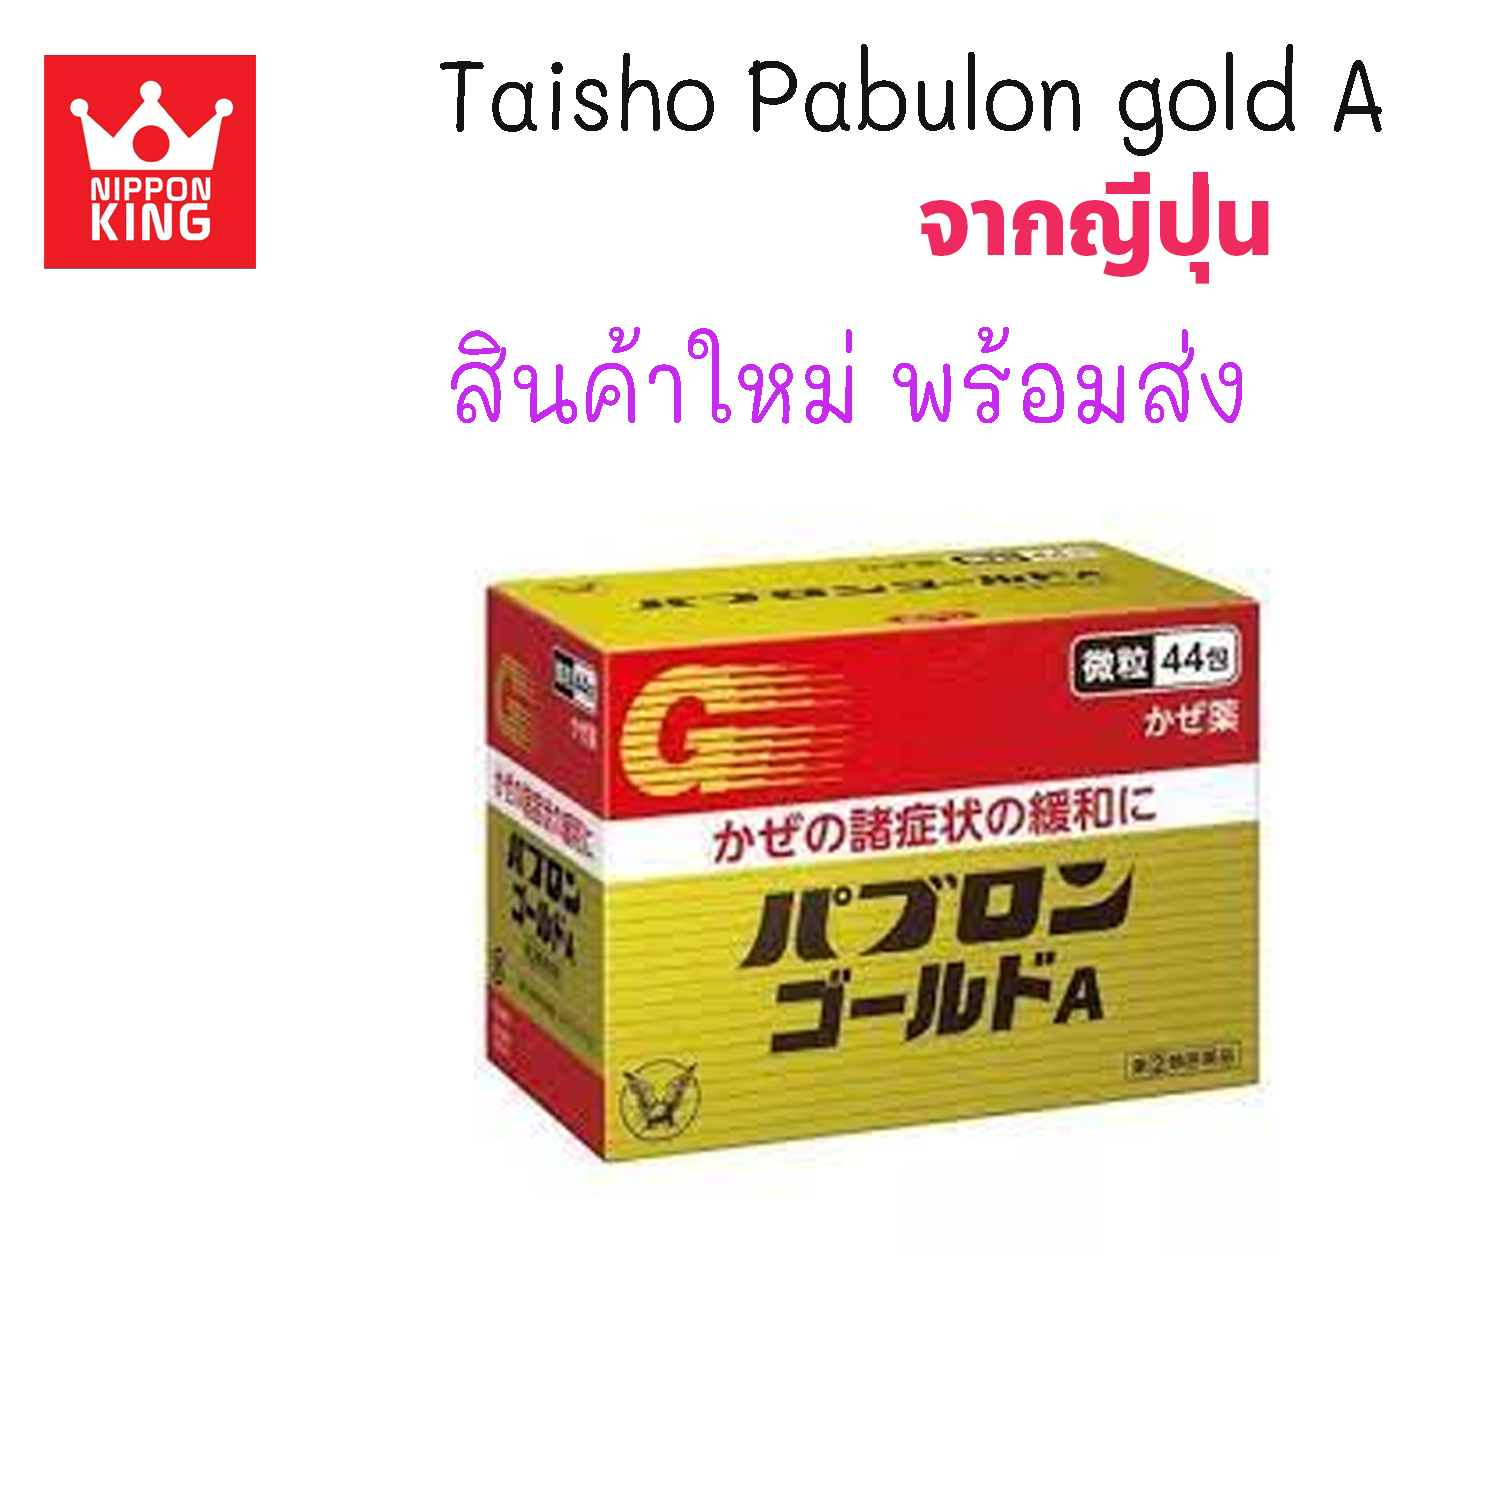 Taisho Pabulon Gold A ชนิดผง 1กล่องบรรจุ 44 ซอง